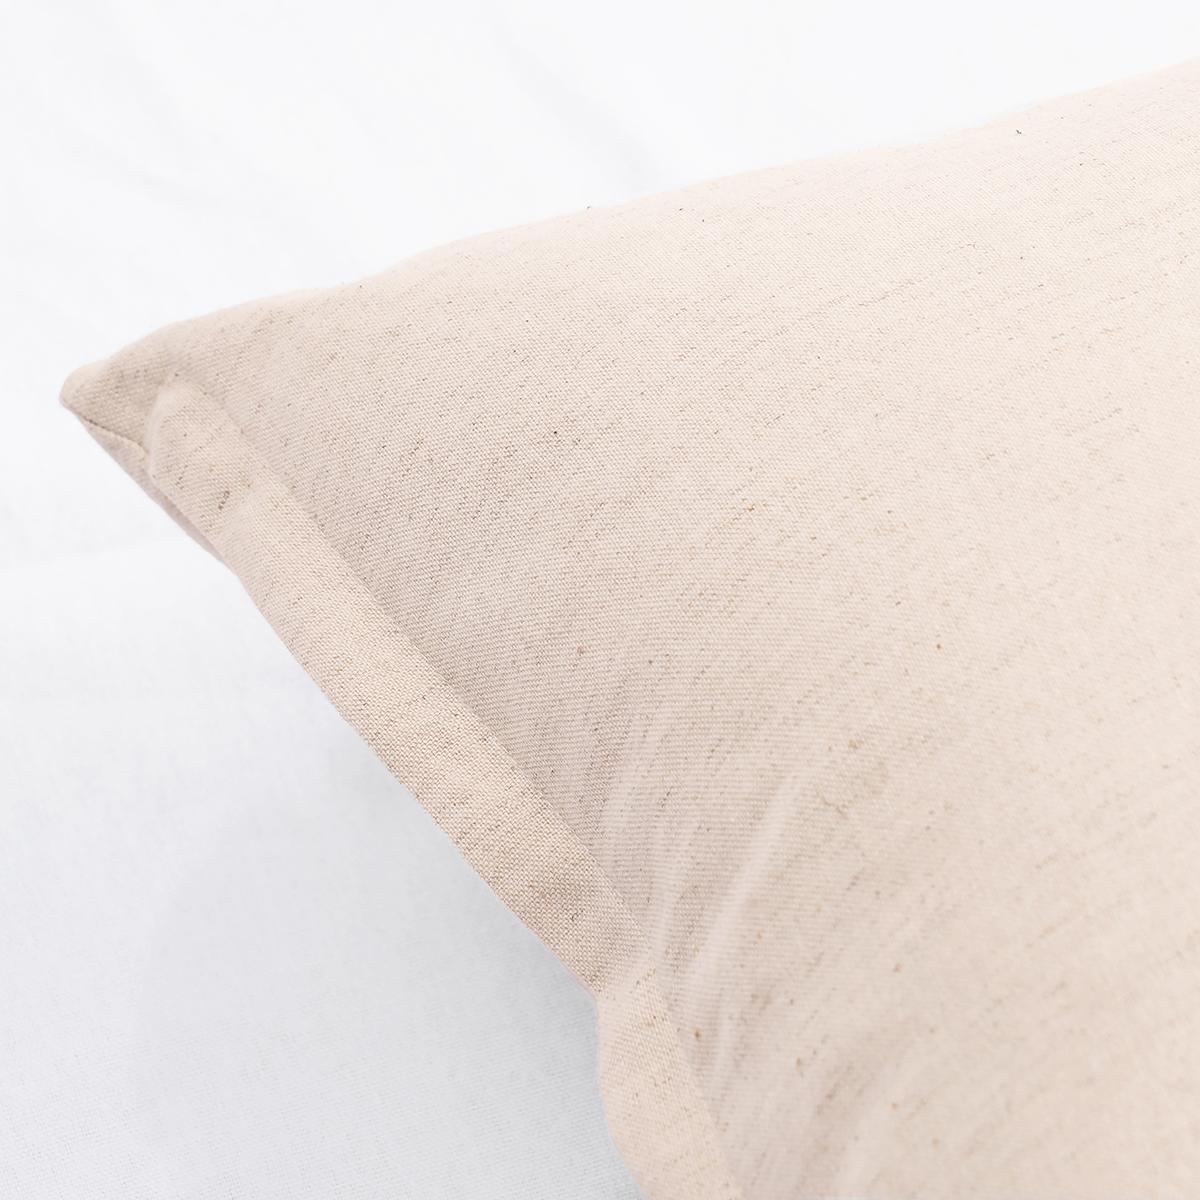 Natural colour Linen cotton blend Pillow cover, sizes available